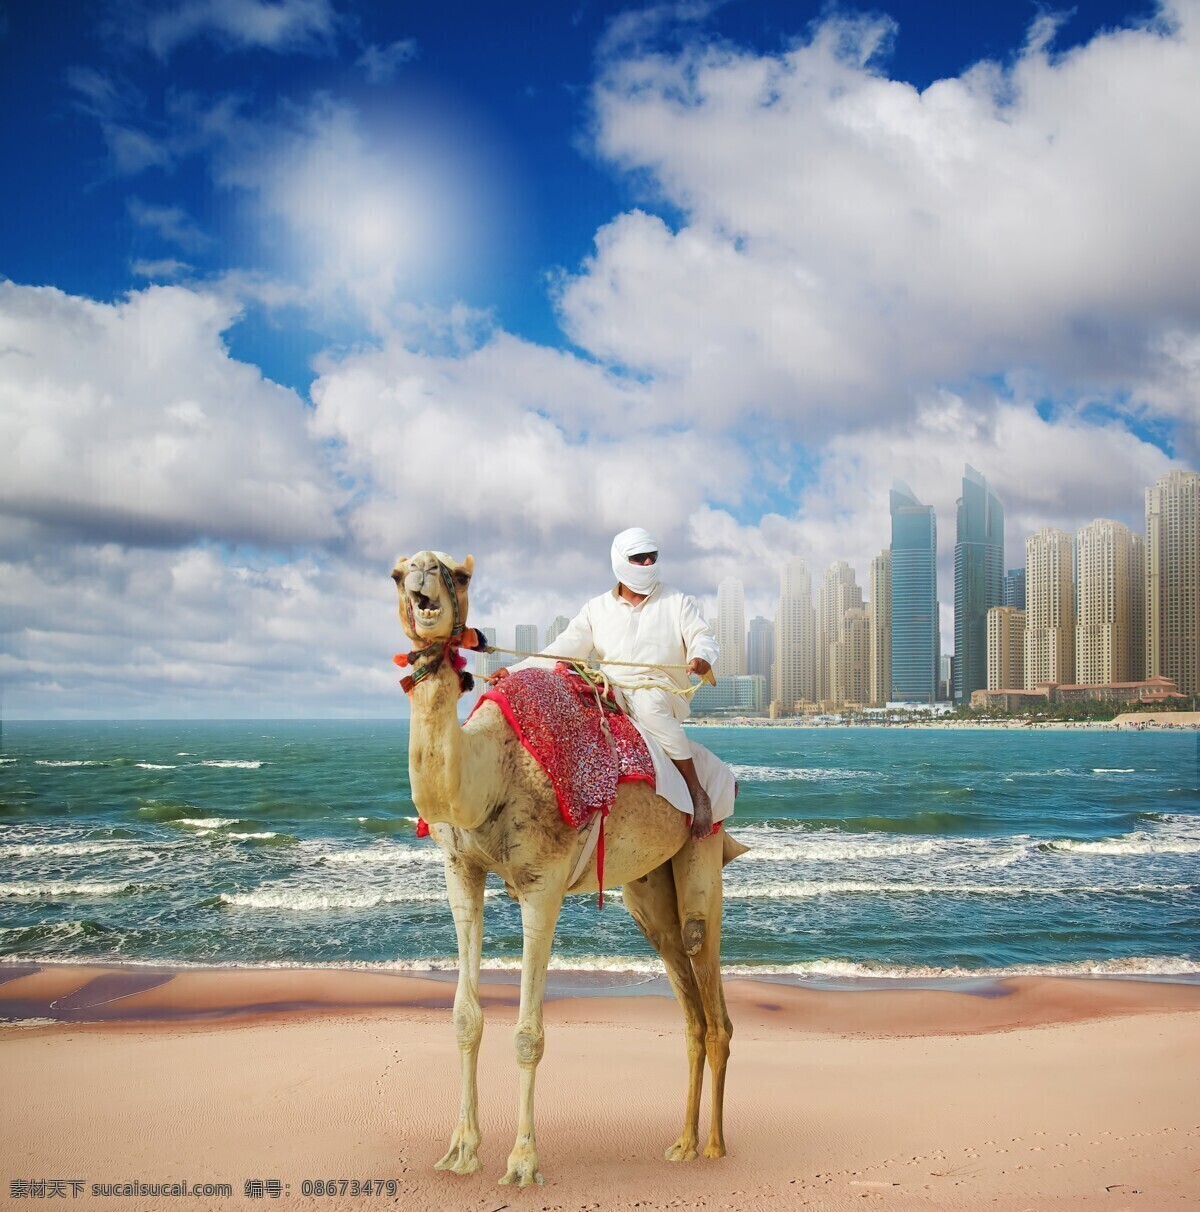 骑骆驼的男人 大海 房子 天空 骆驼 沙滩 男人 人物 人物摄影 国外人物 生活人物 其他类别 生活百科 灰色